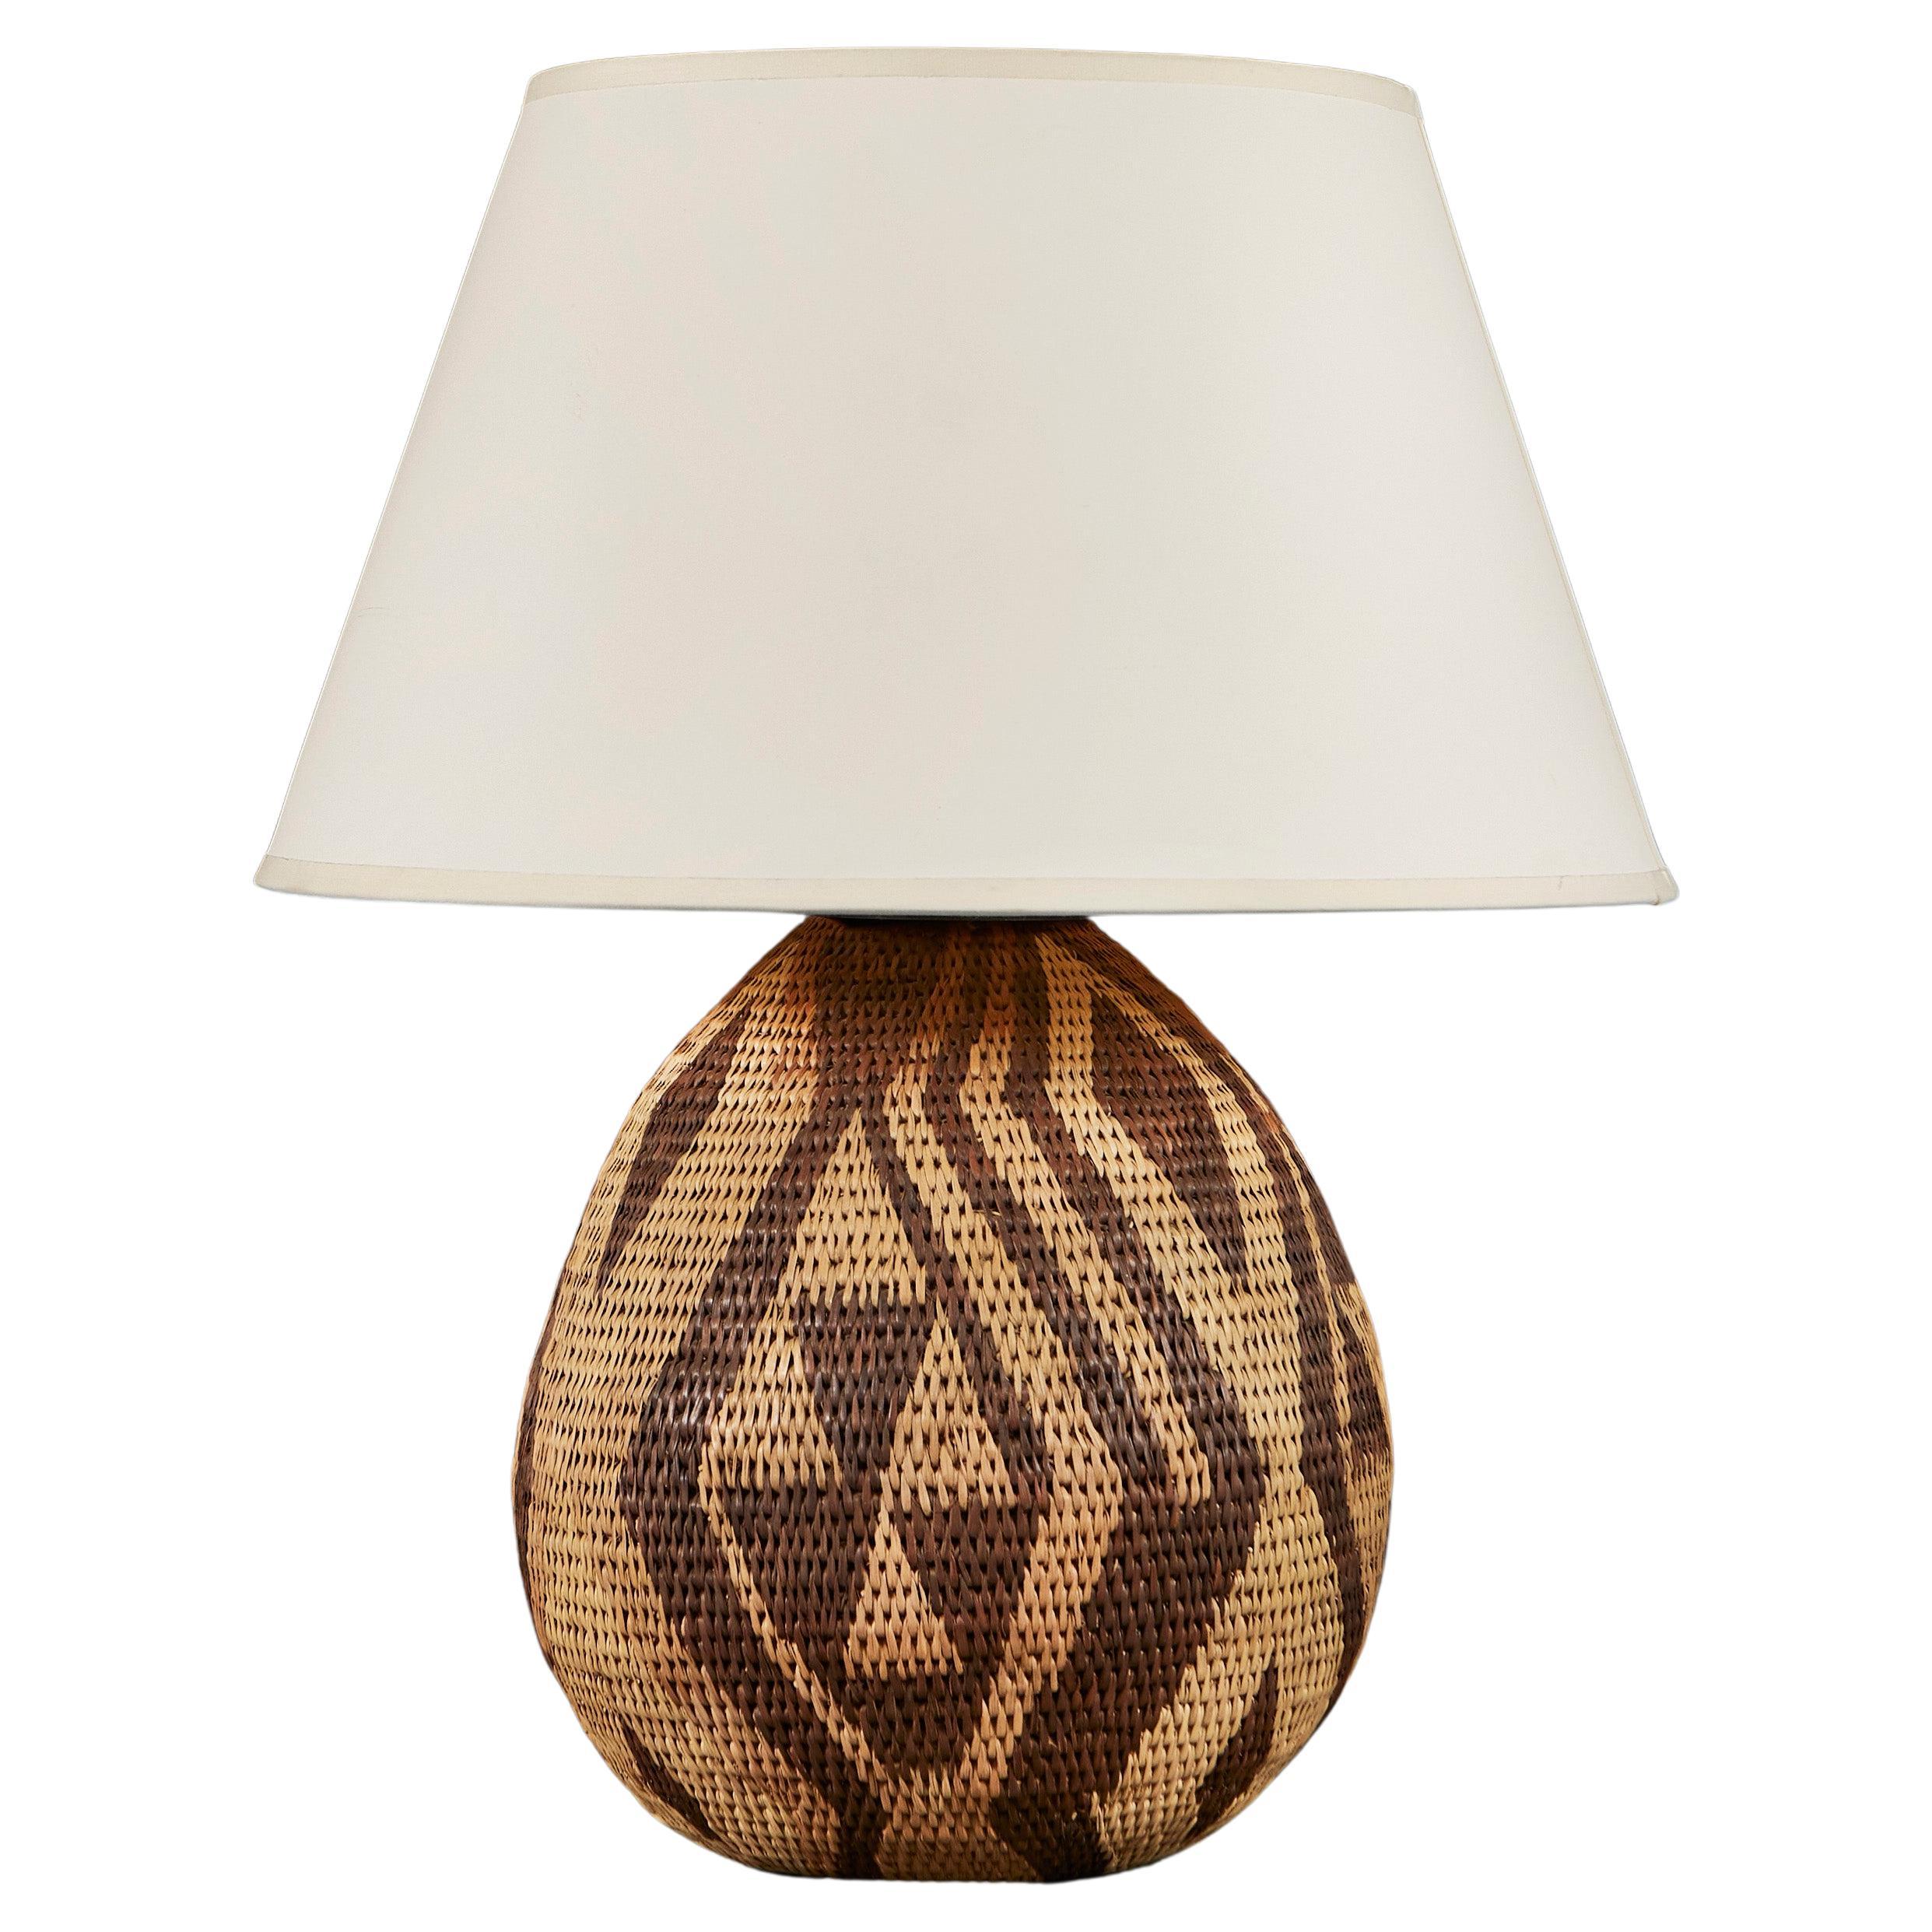 A Zulu Basket Weave Lamp For Sale